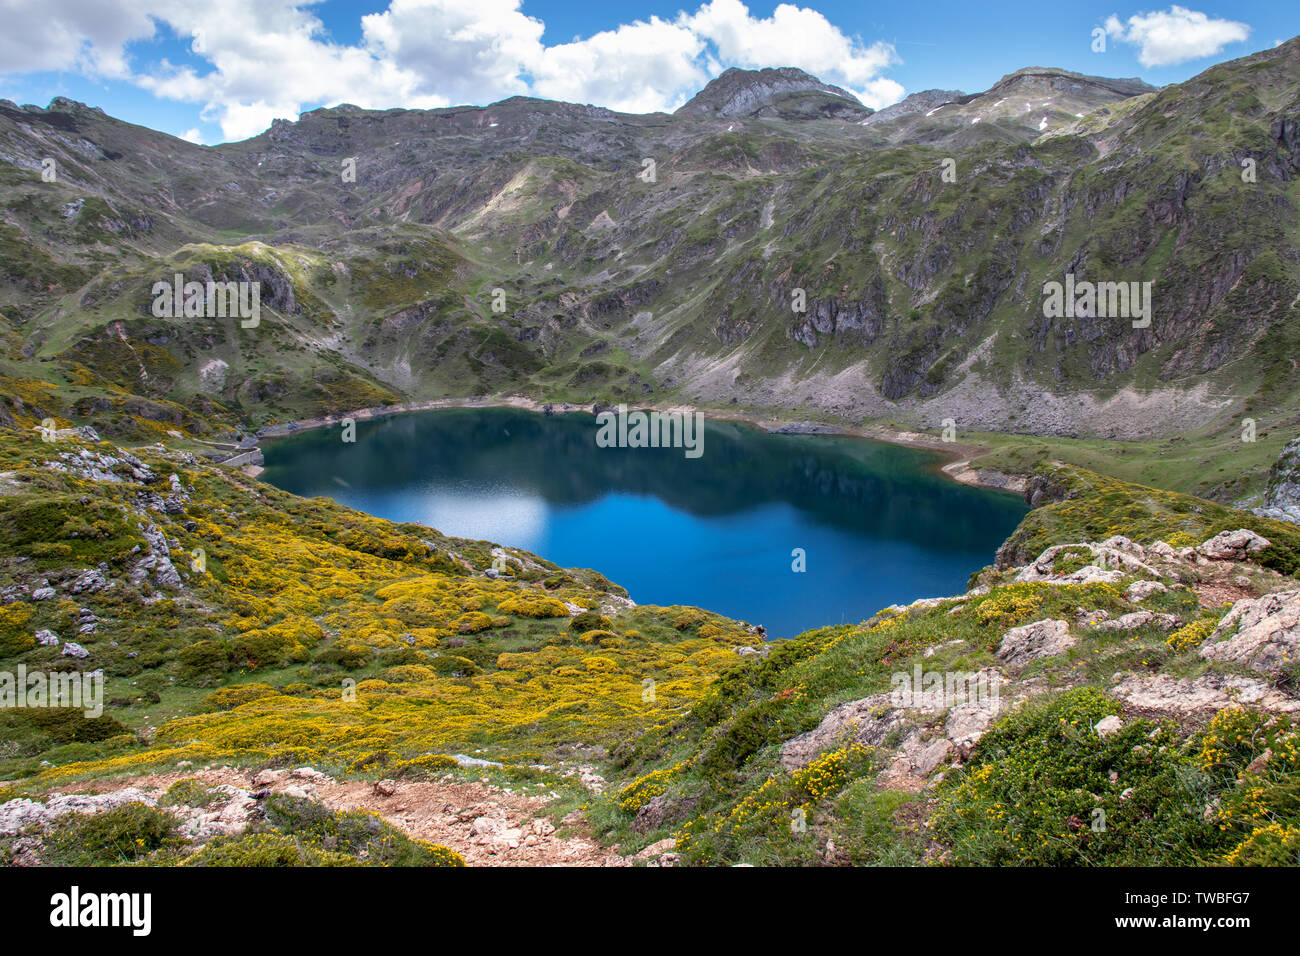 Calabazosa ou noir Le lac glaciaire dans le parc national de Somiedo, Asturies, Espagne. Saliencia Lacs de montagne. Vue de dessus de la vue. Genista occiden Banque D'Images